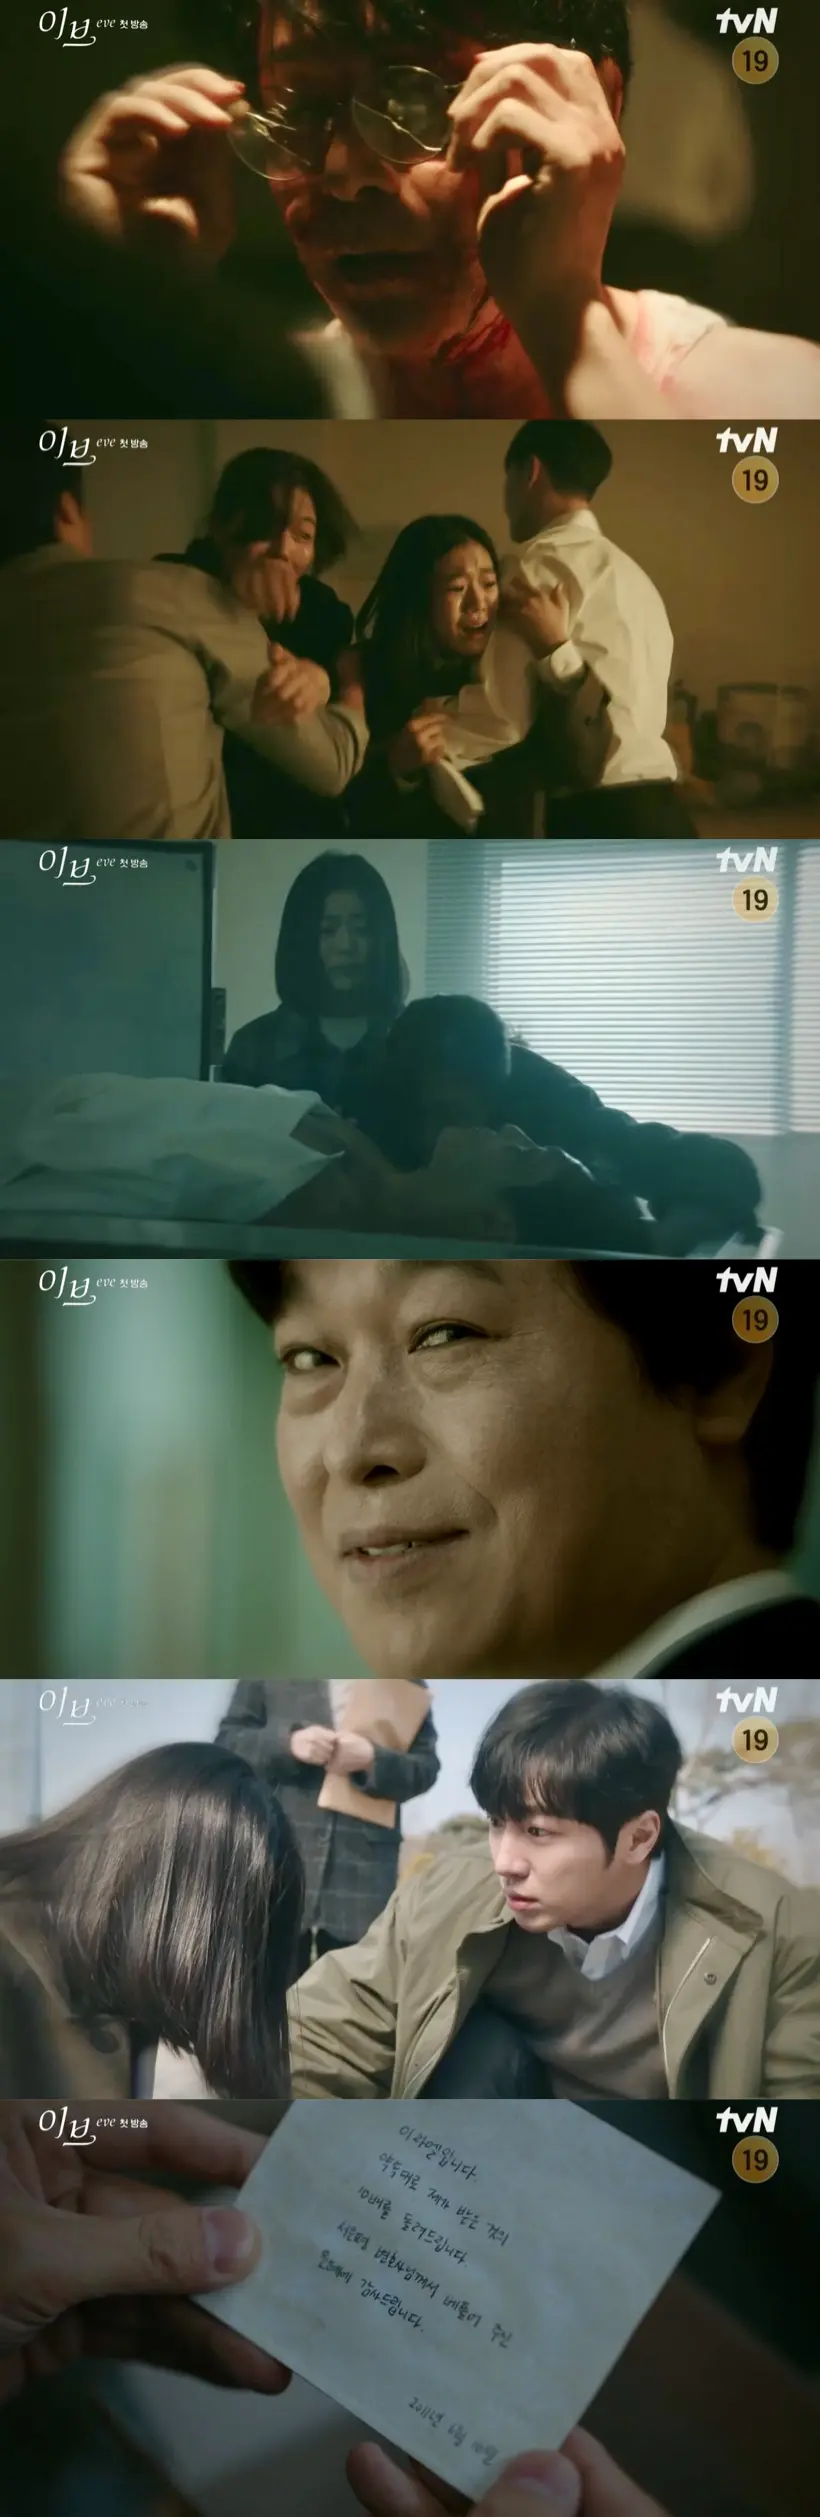 EVE EP.1 : พ่อของอีราเอลโดนซ้อมและทรมาน เพื่อให้เซ็นยอมรับความผิดที่ตัวเองไม่ได้เป็นคนก่อ สุดท้ายเขาก็เสียชีวิต | Screenshots: tvN Korea